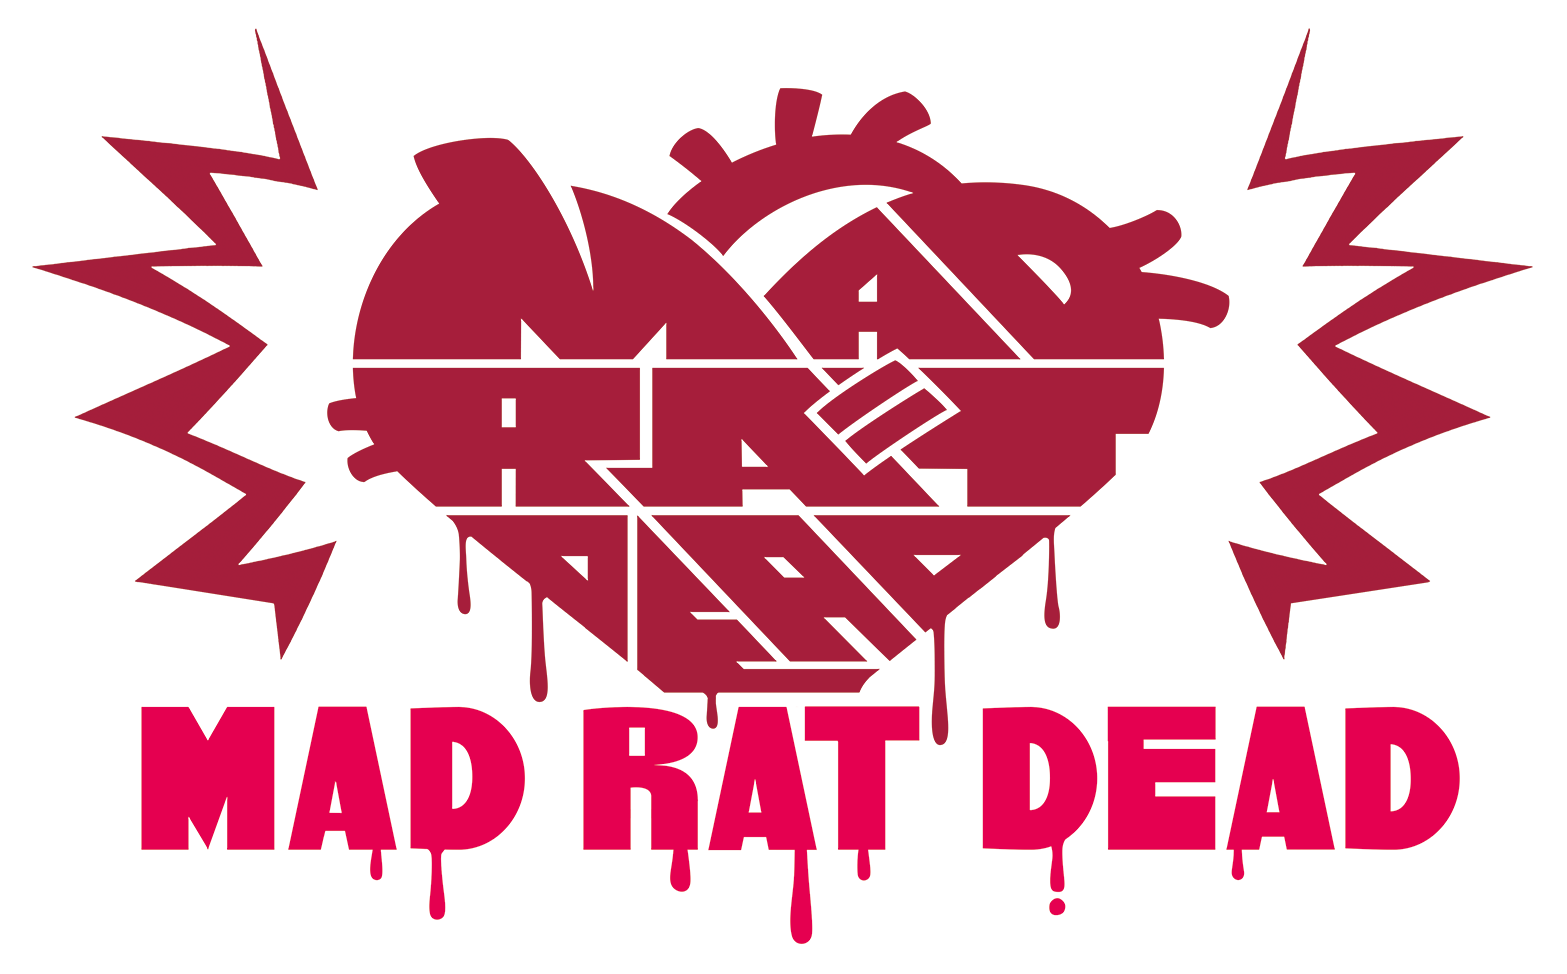 Mad Rat Dead - Wikipedia